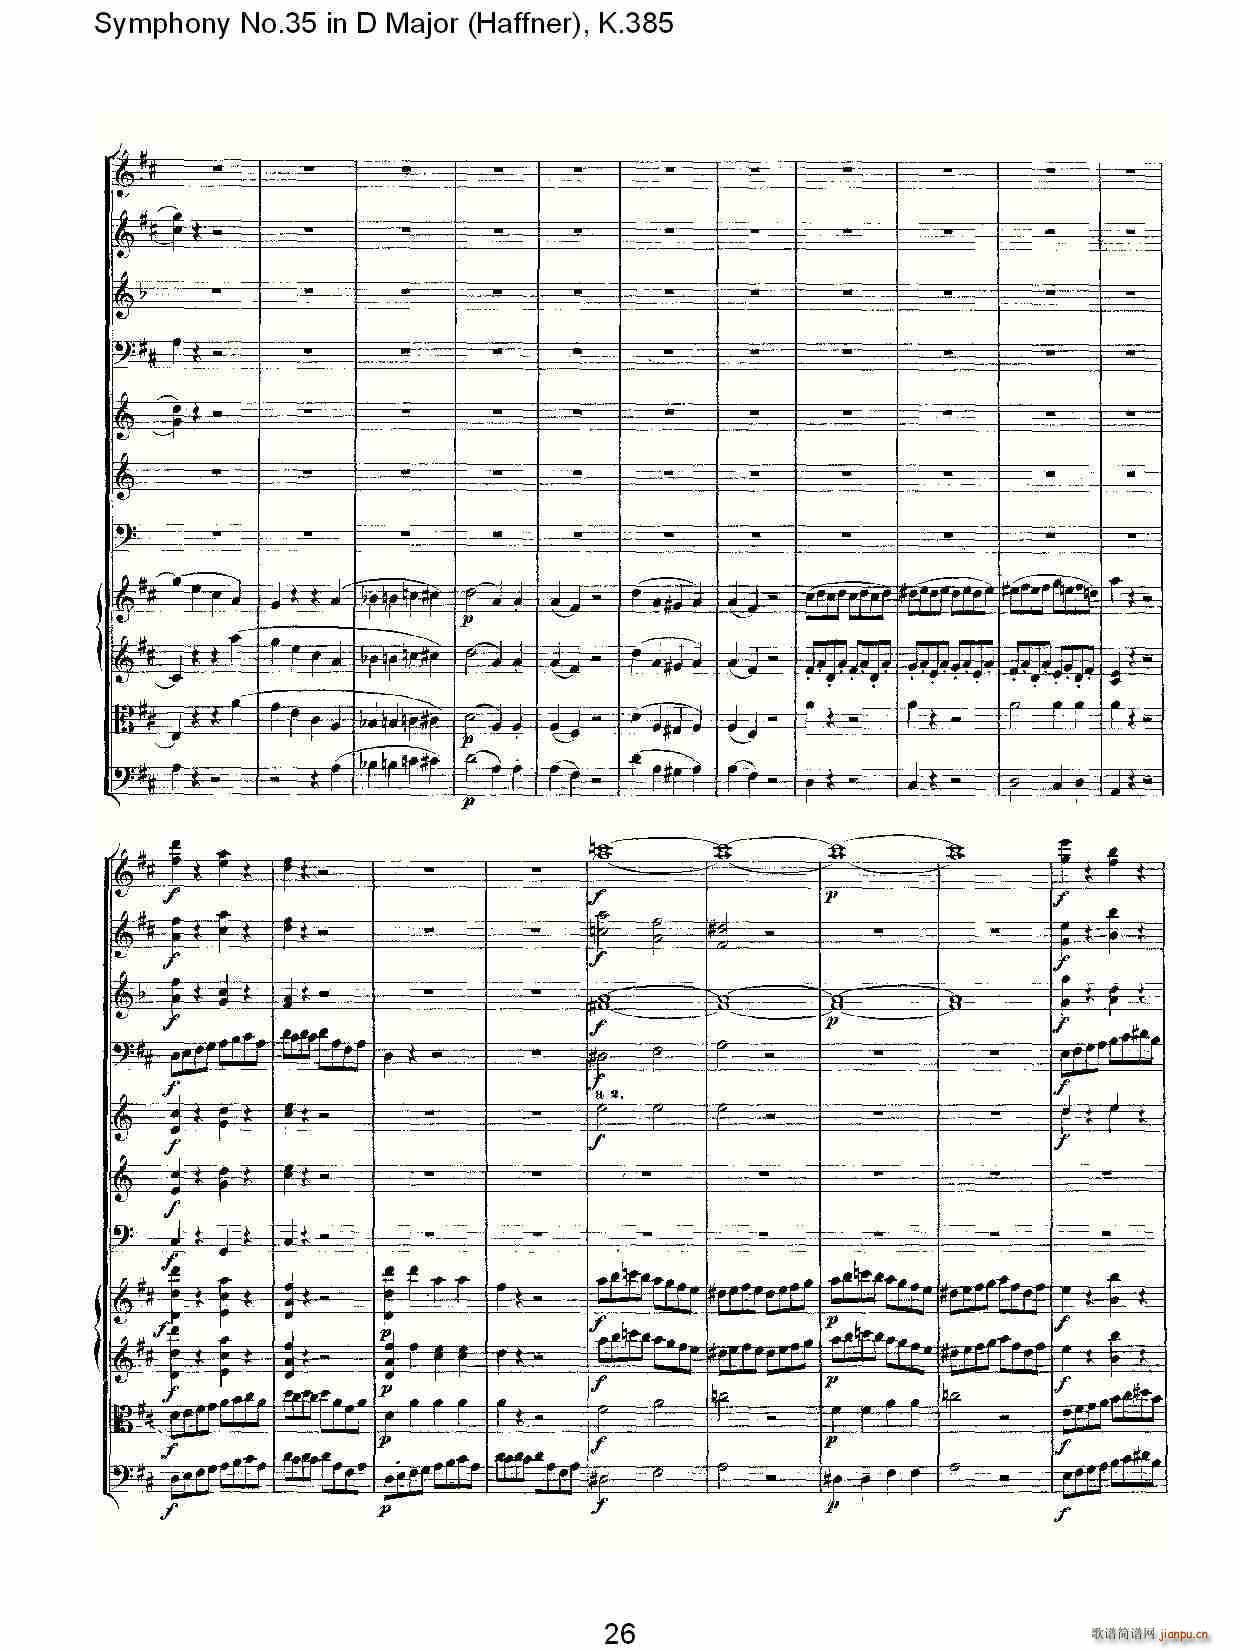 Symphony No.35 in D Major, K.385(ʮּ)26